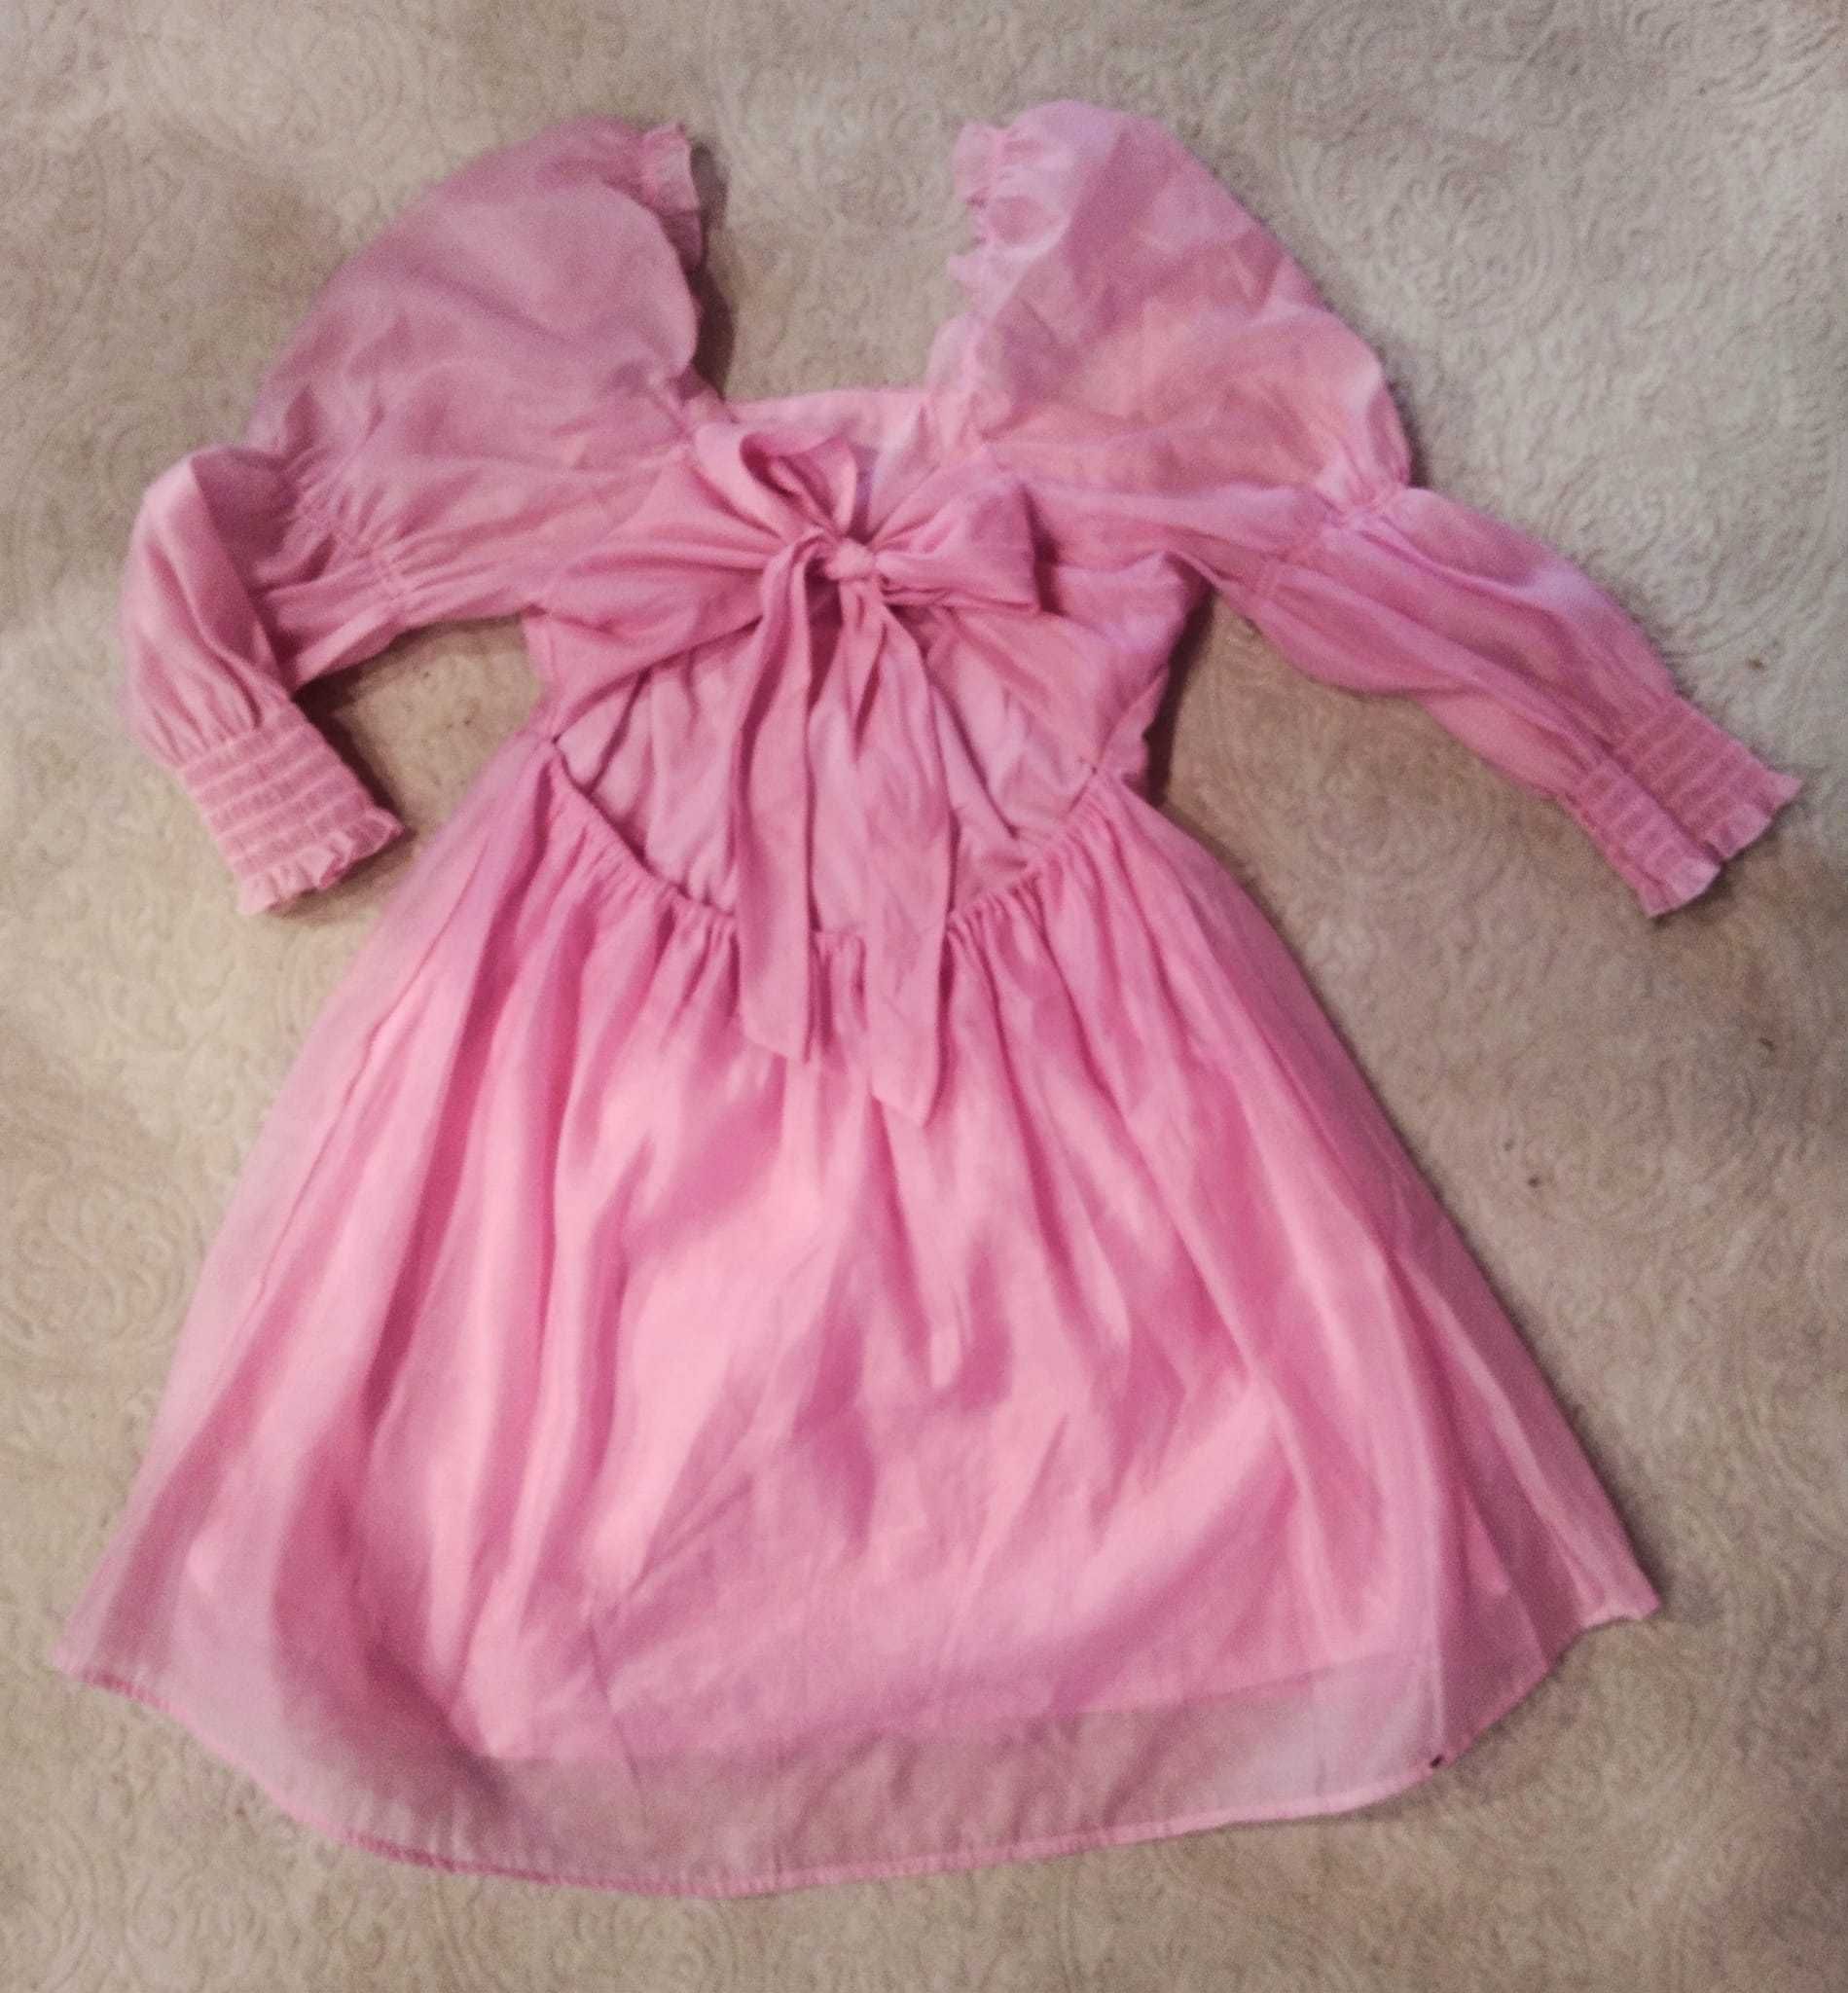 Bajkowa różowa sukienka z organzy